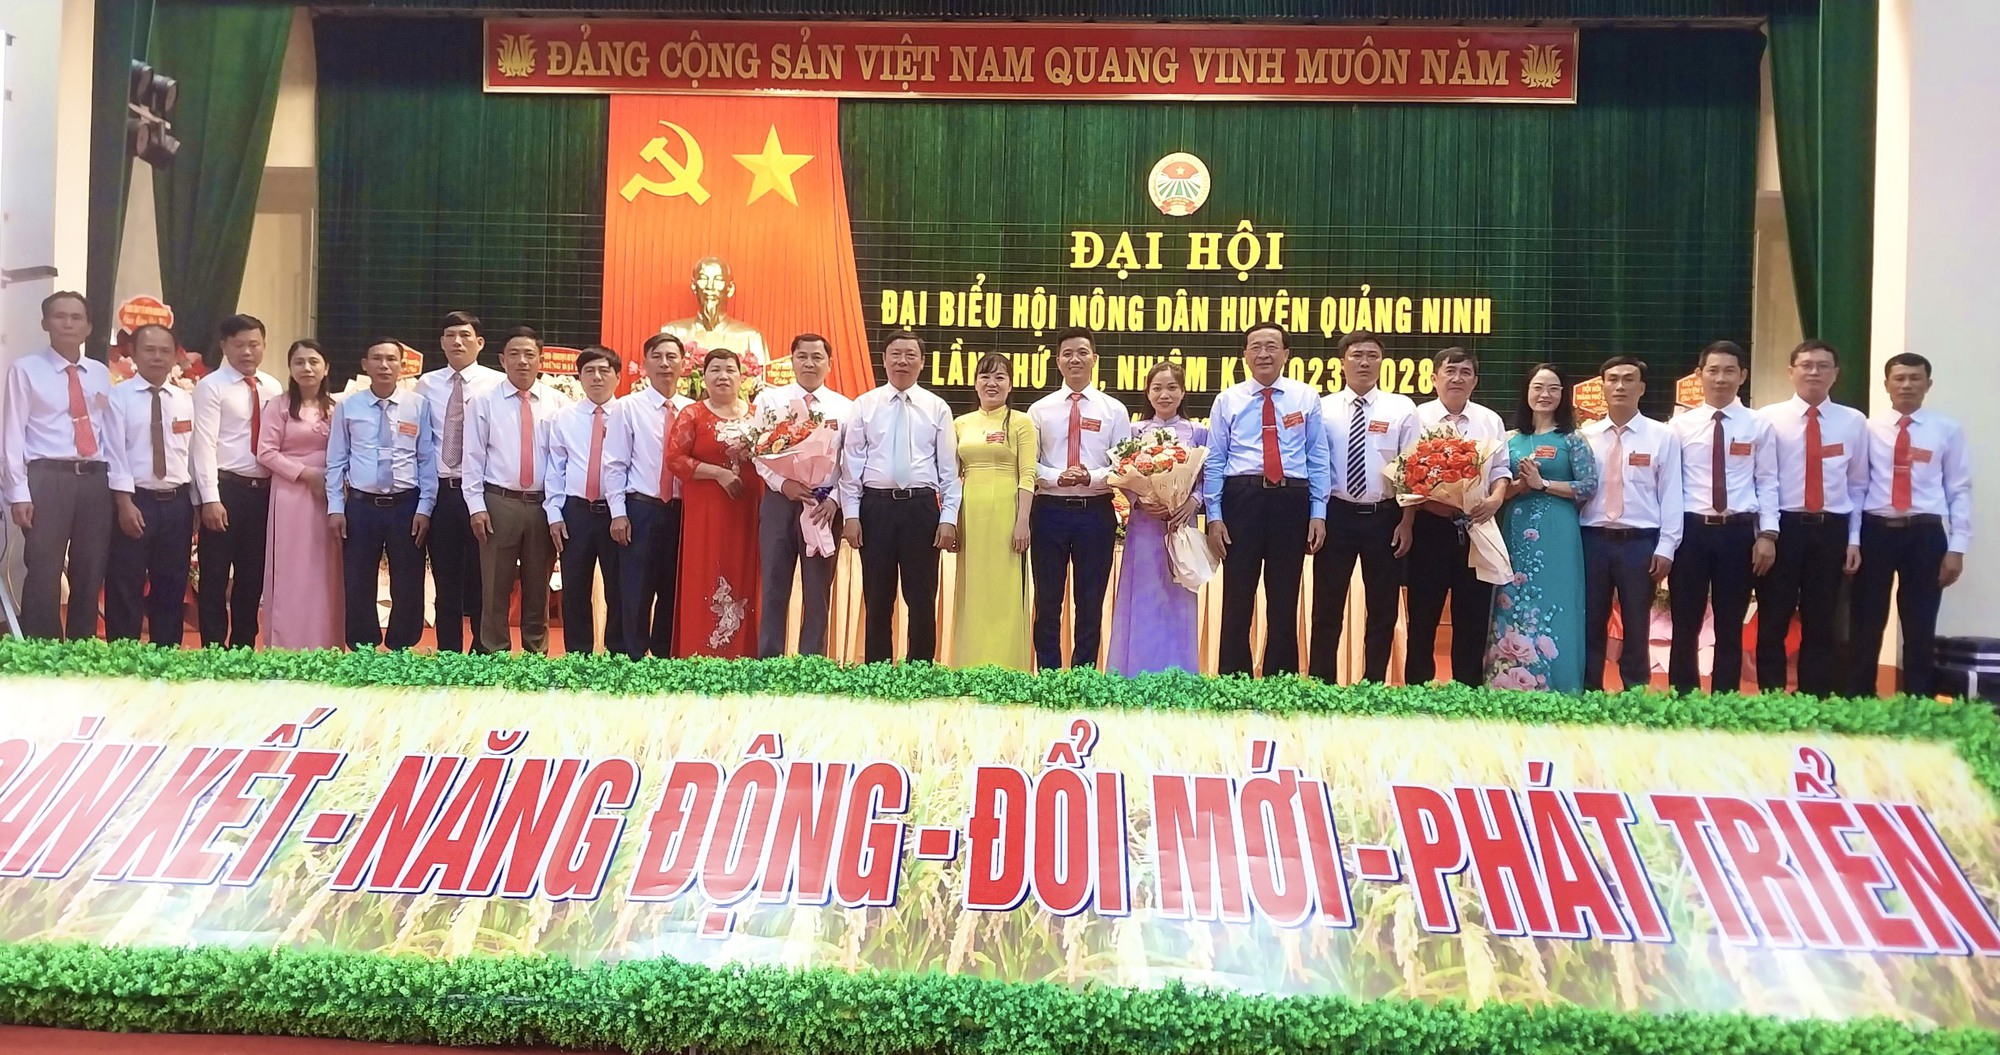 Quản Bình: Đại hội Hội Nông dân huyện Quảng Ninh bầu 20 đồng chí tham gia Ban Chấp hành  - Ảnh 3.